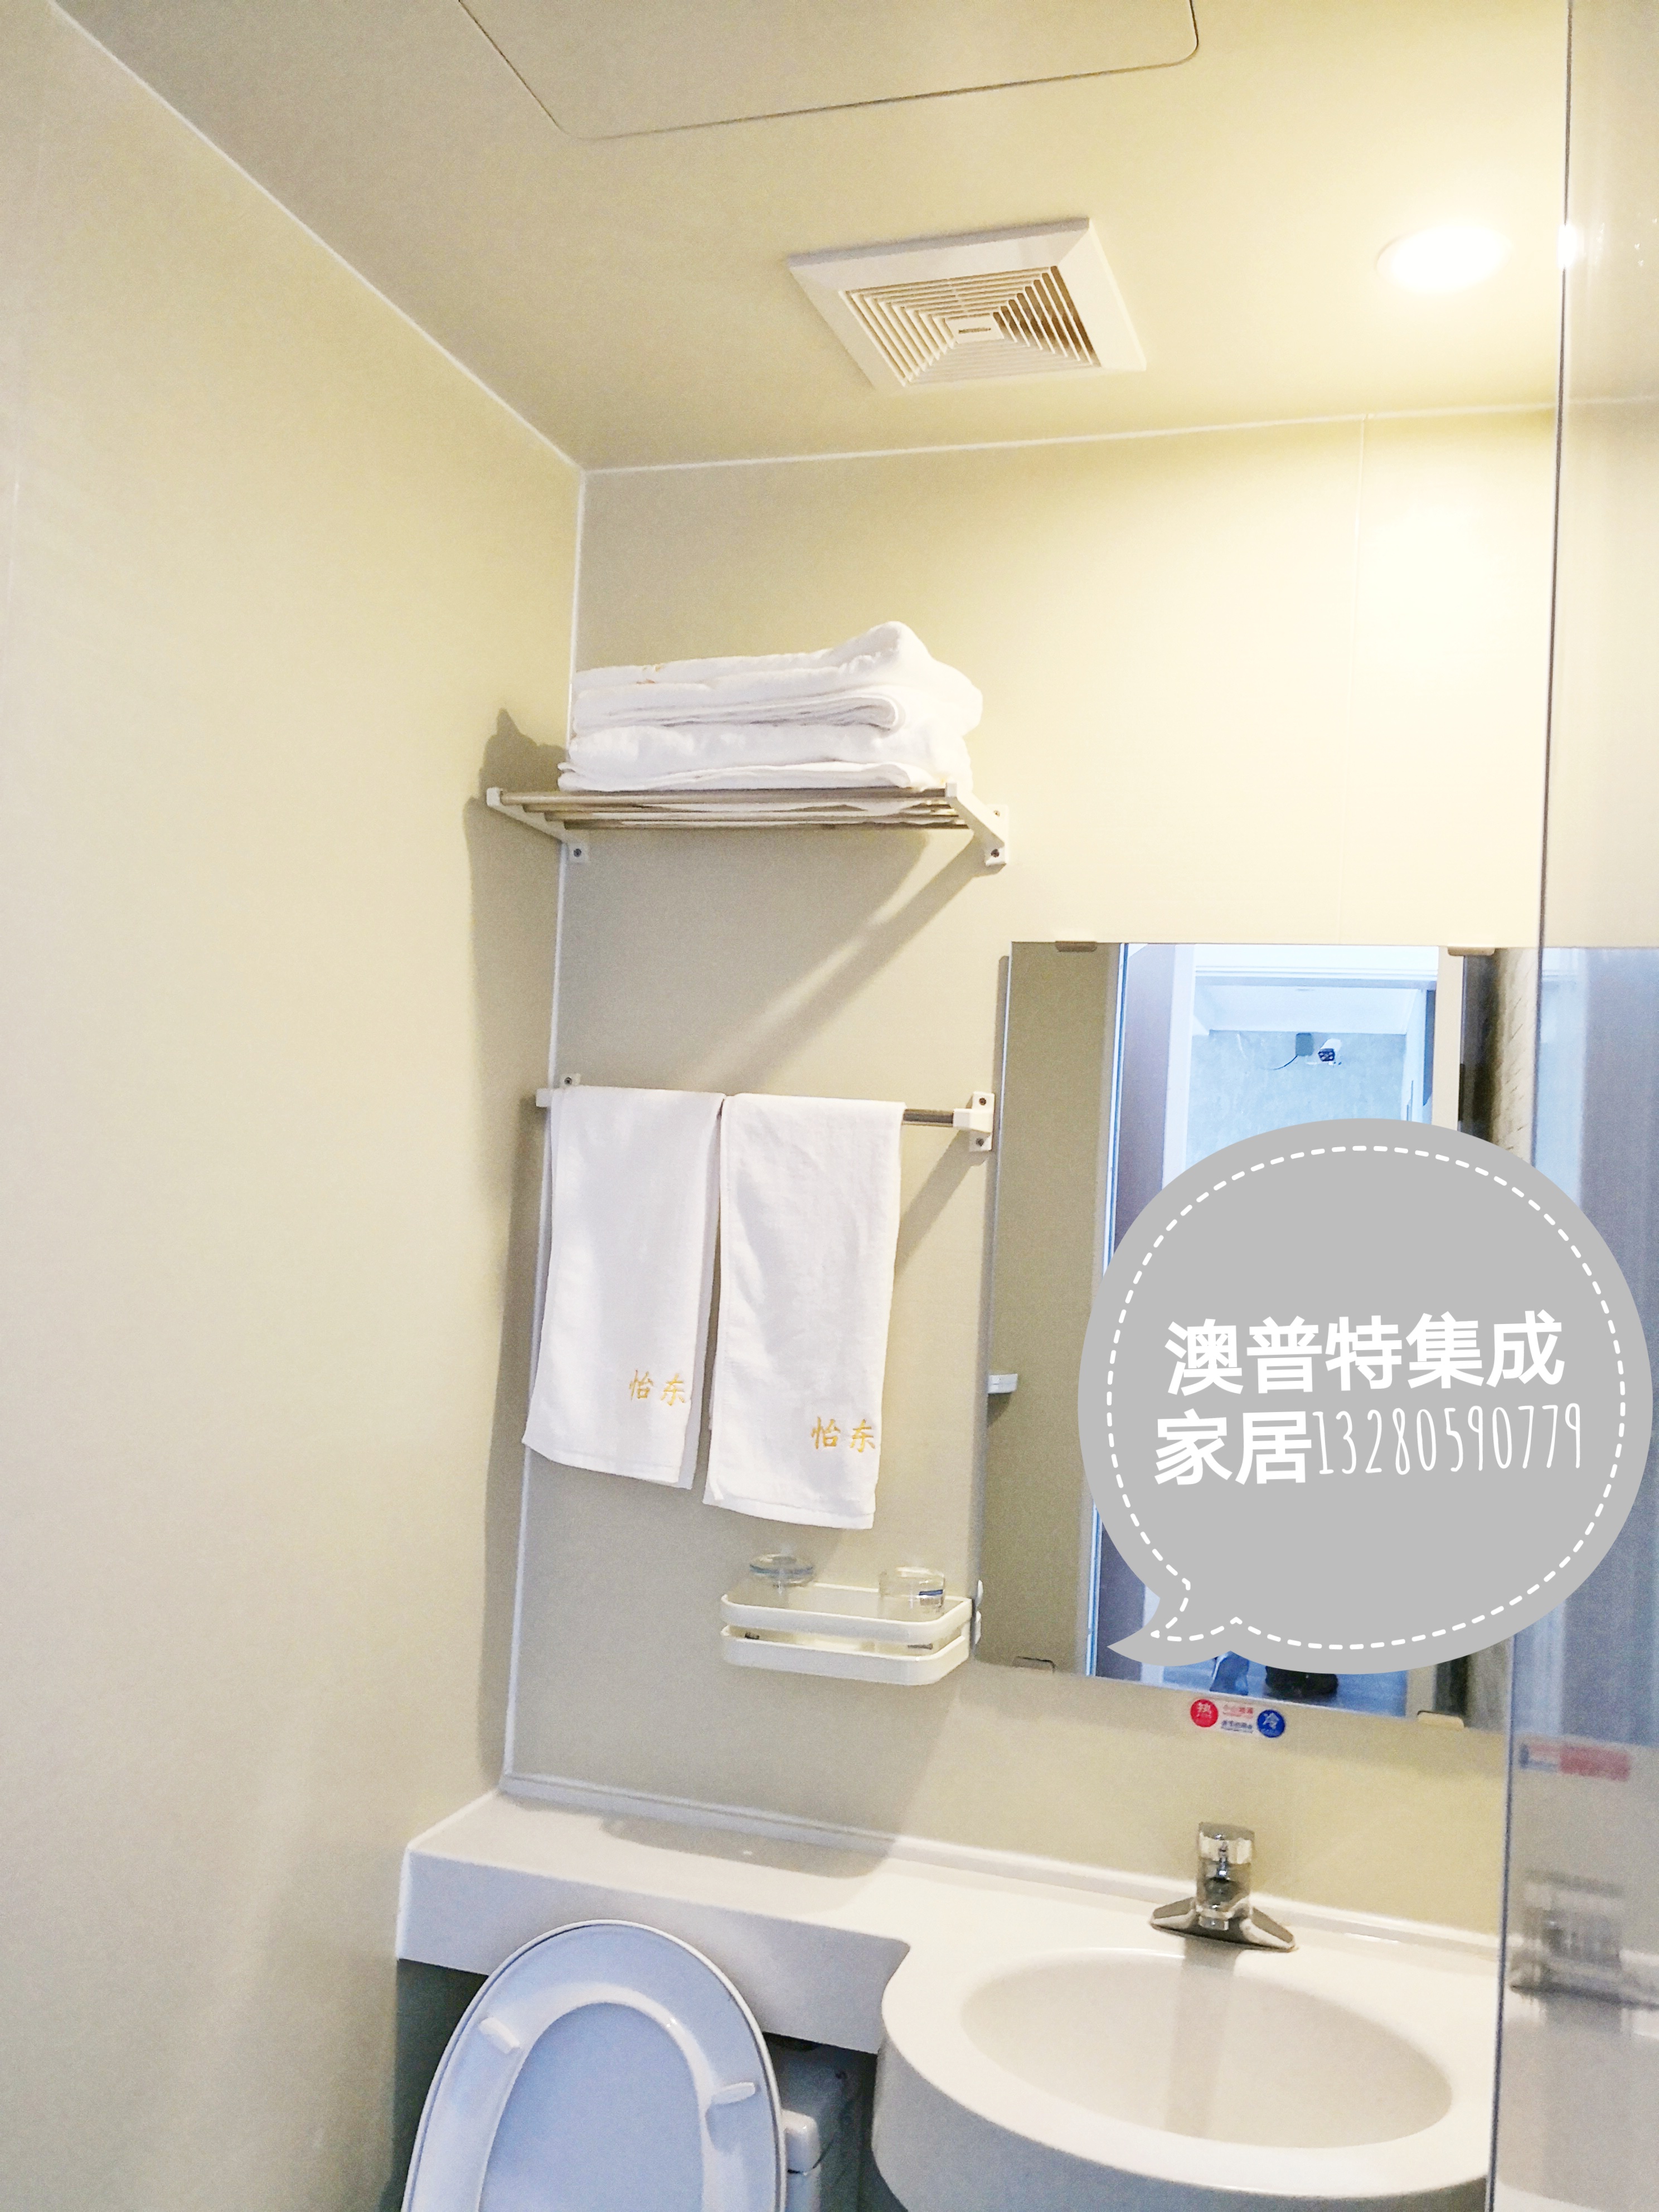 一体化卫浴 集成式整体卫生间 临沂澳普特集成家居 日式整体卫生间 生产厂家